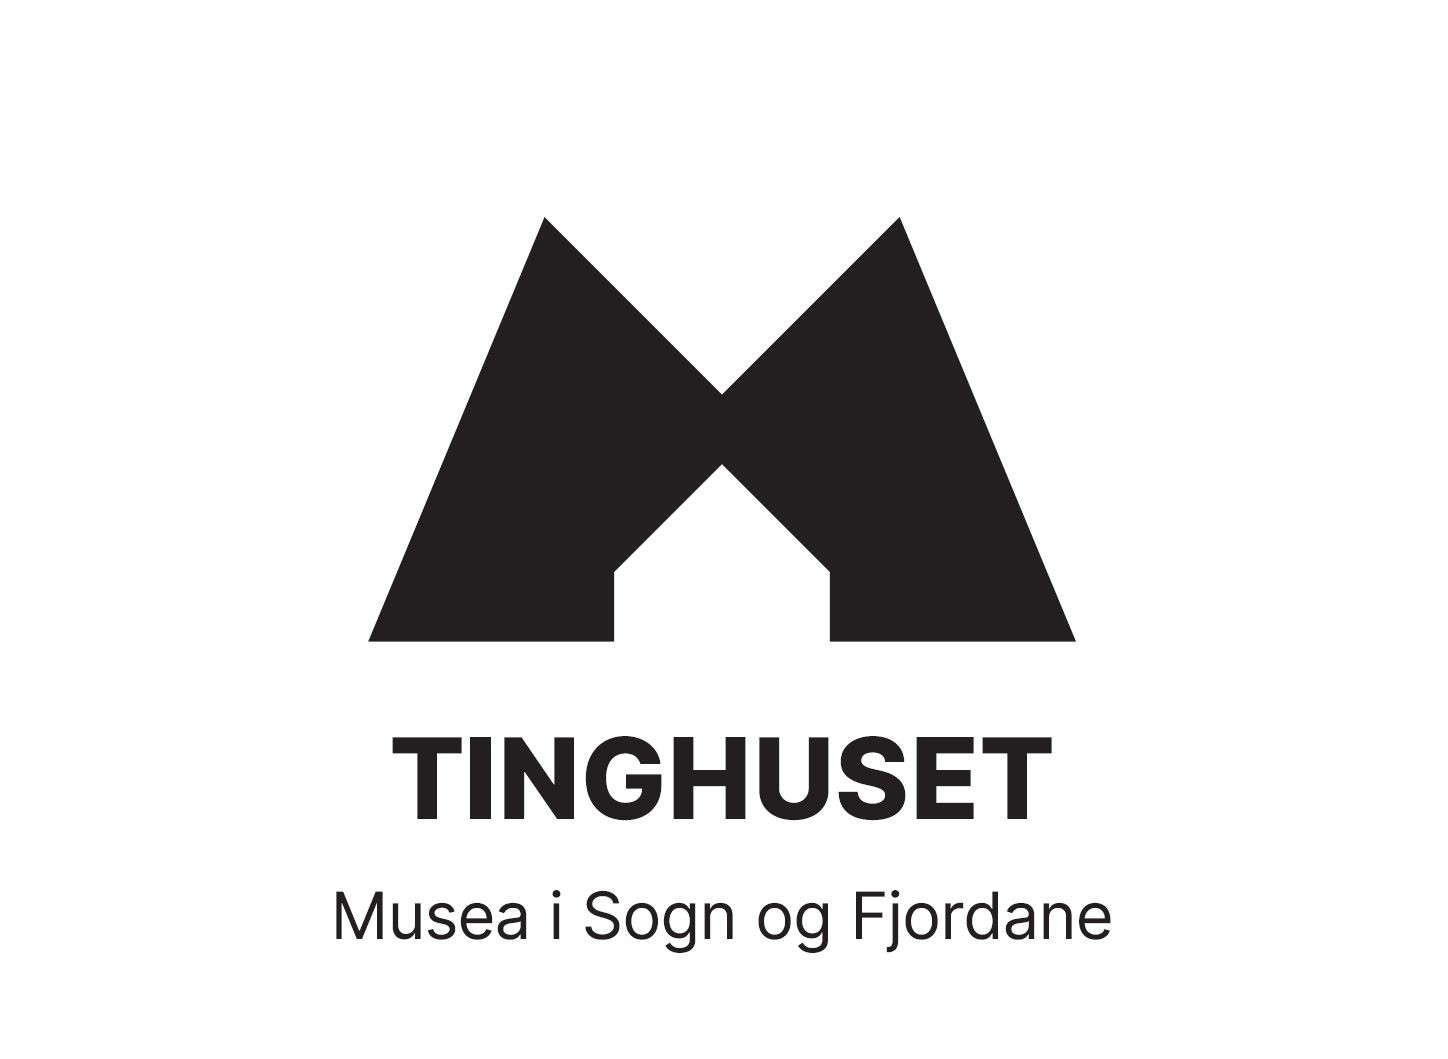 Logo er ein stor M over teksten Tinghuset Musea i Sogn og Fjordane